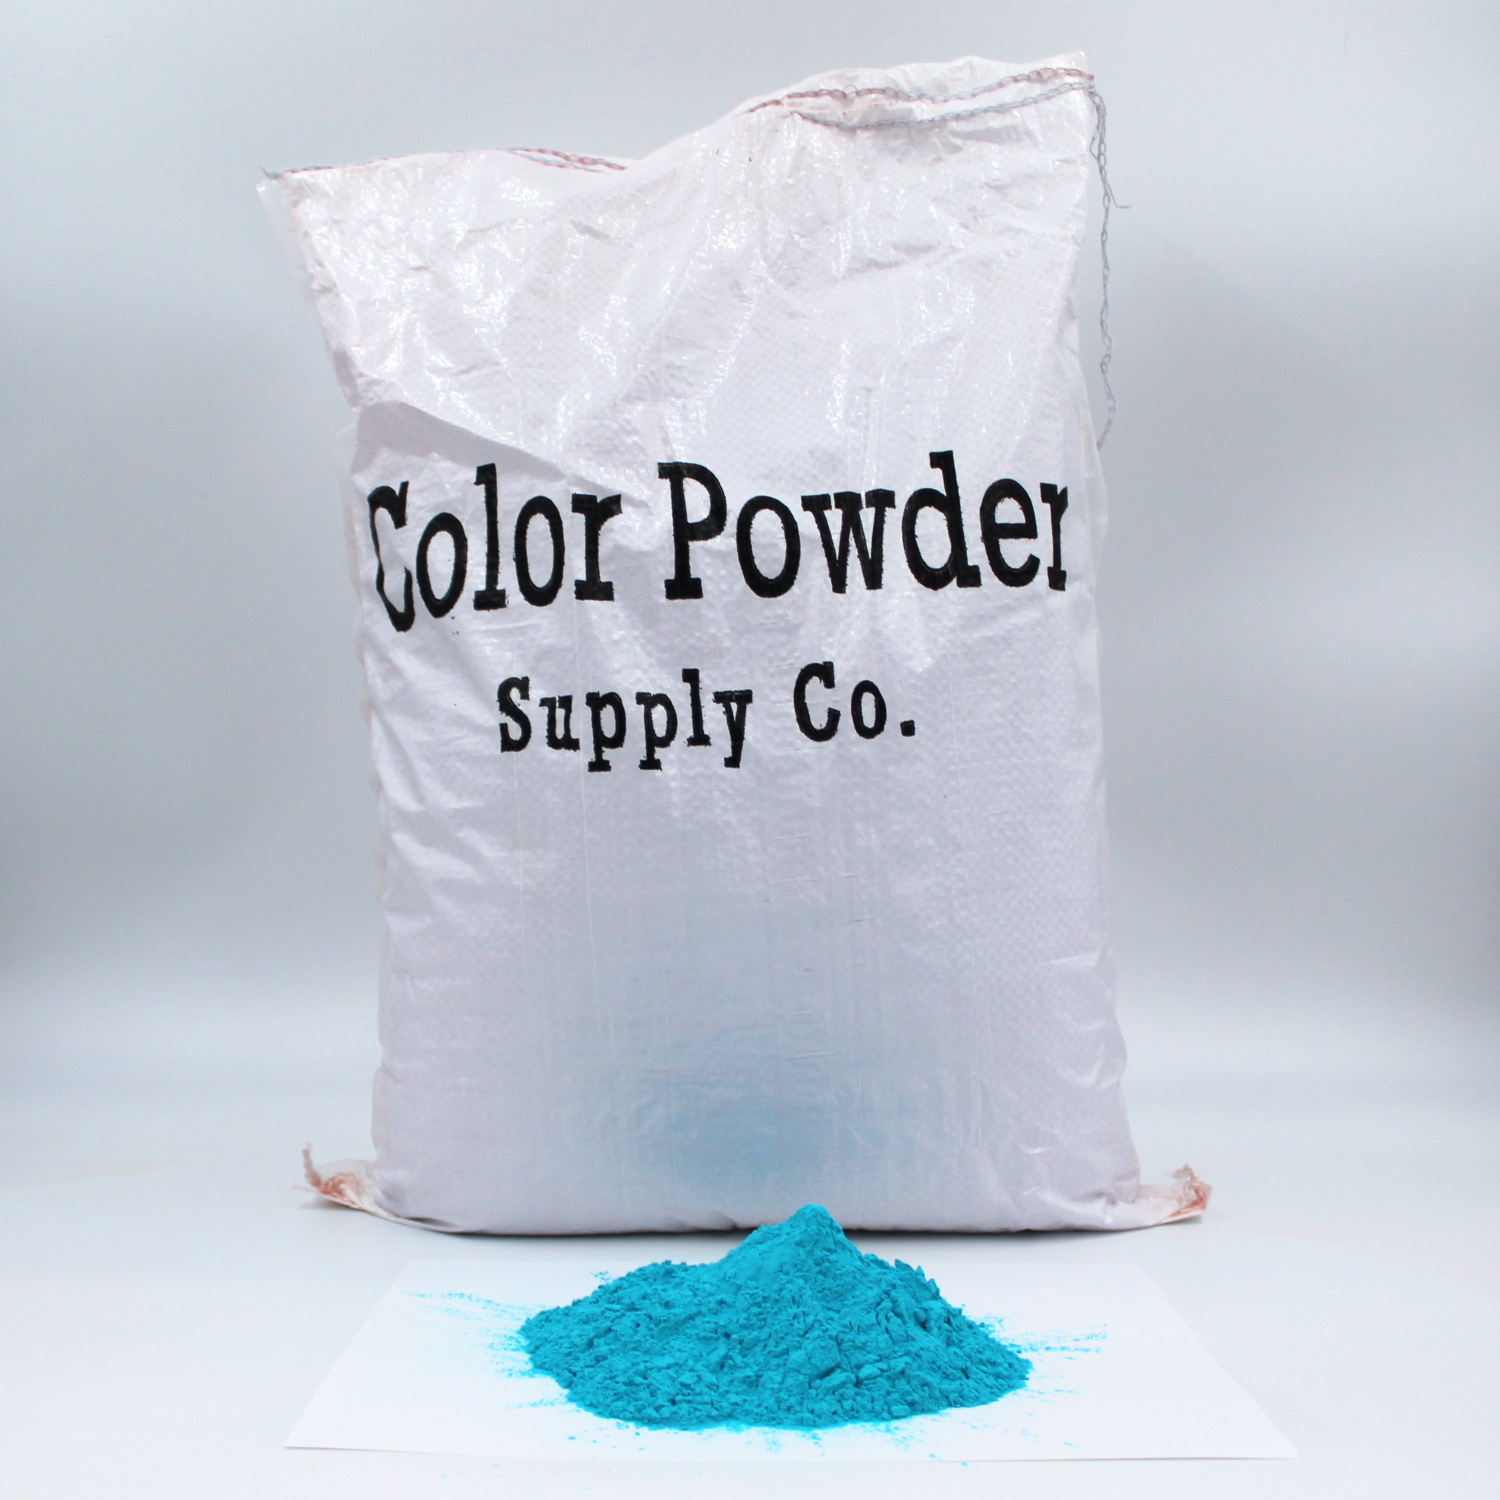 Wholesale Color Powder, 50 pound bulk (10 colors)